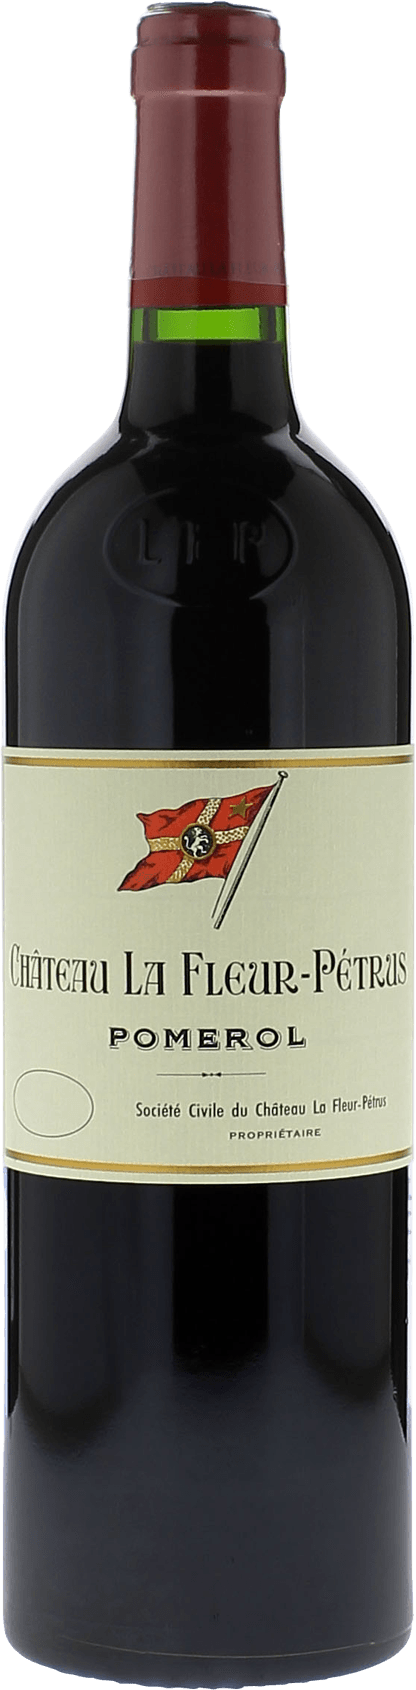 La fleur petrus 1990  Pomerol, Bordeaux rouge